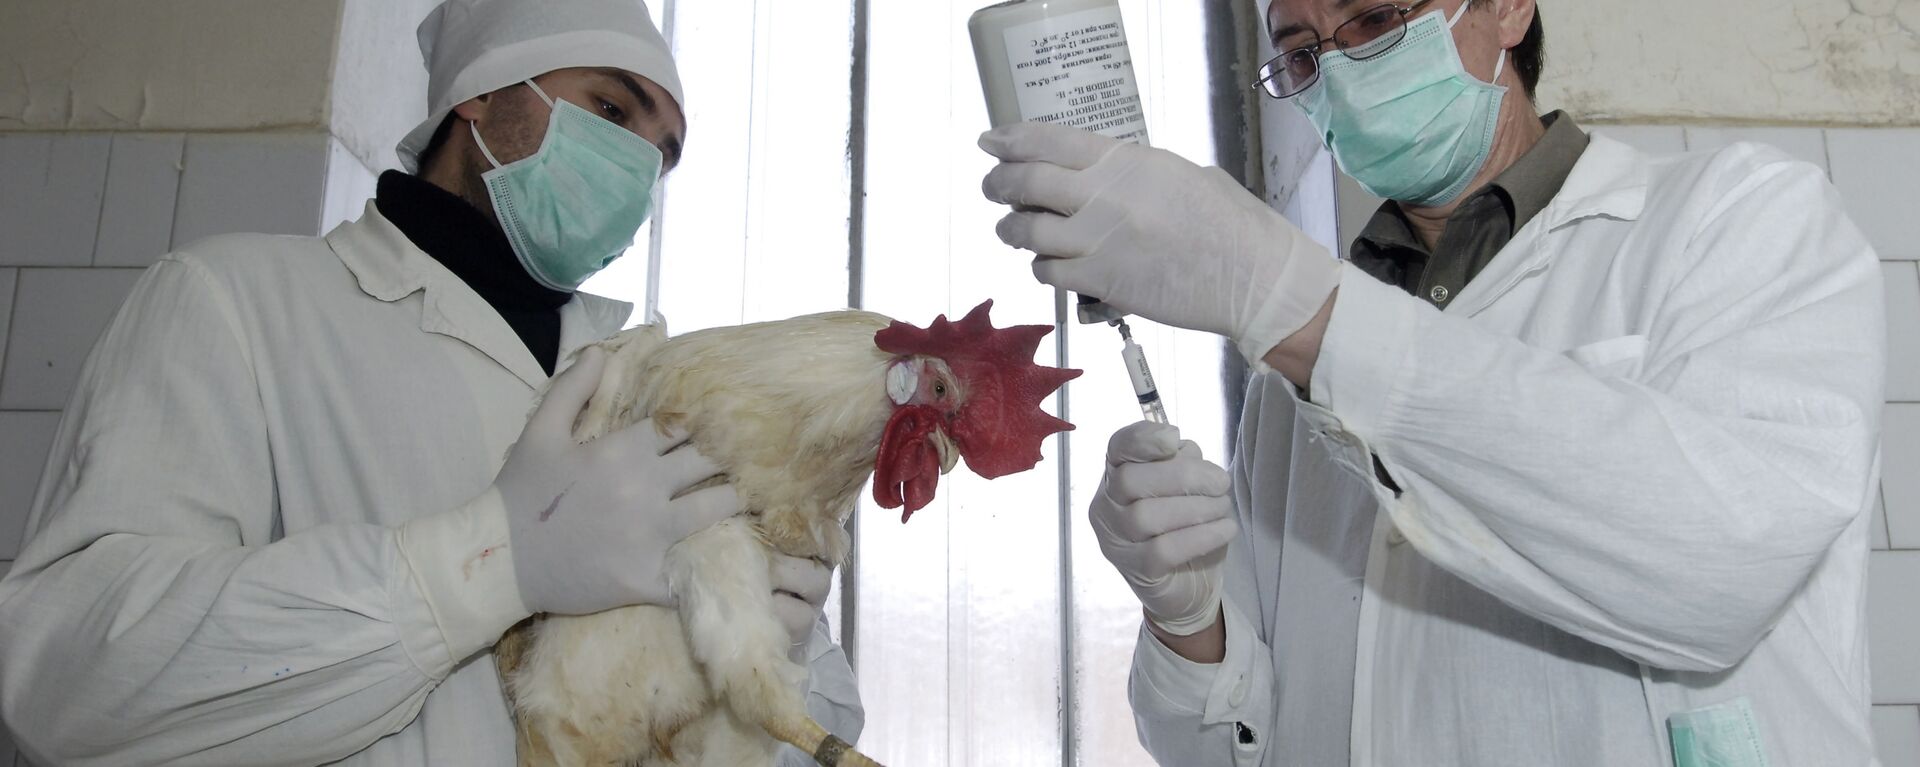  ثبت اولین واقعه مرگ انسان بر اثر آنفلوانزای مرغی در هند      - اسپوتنیک افغانستان  , 1920, 21.07.2021